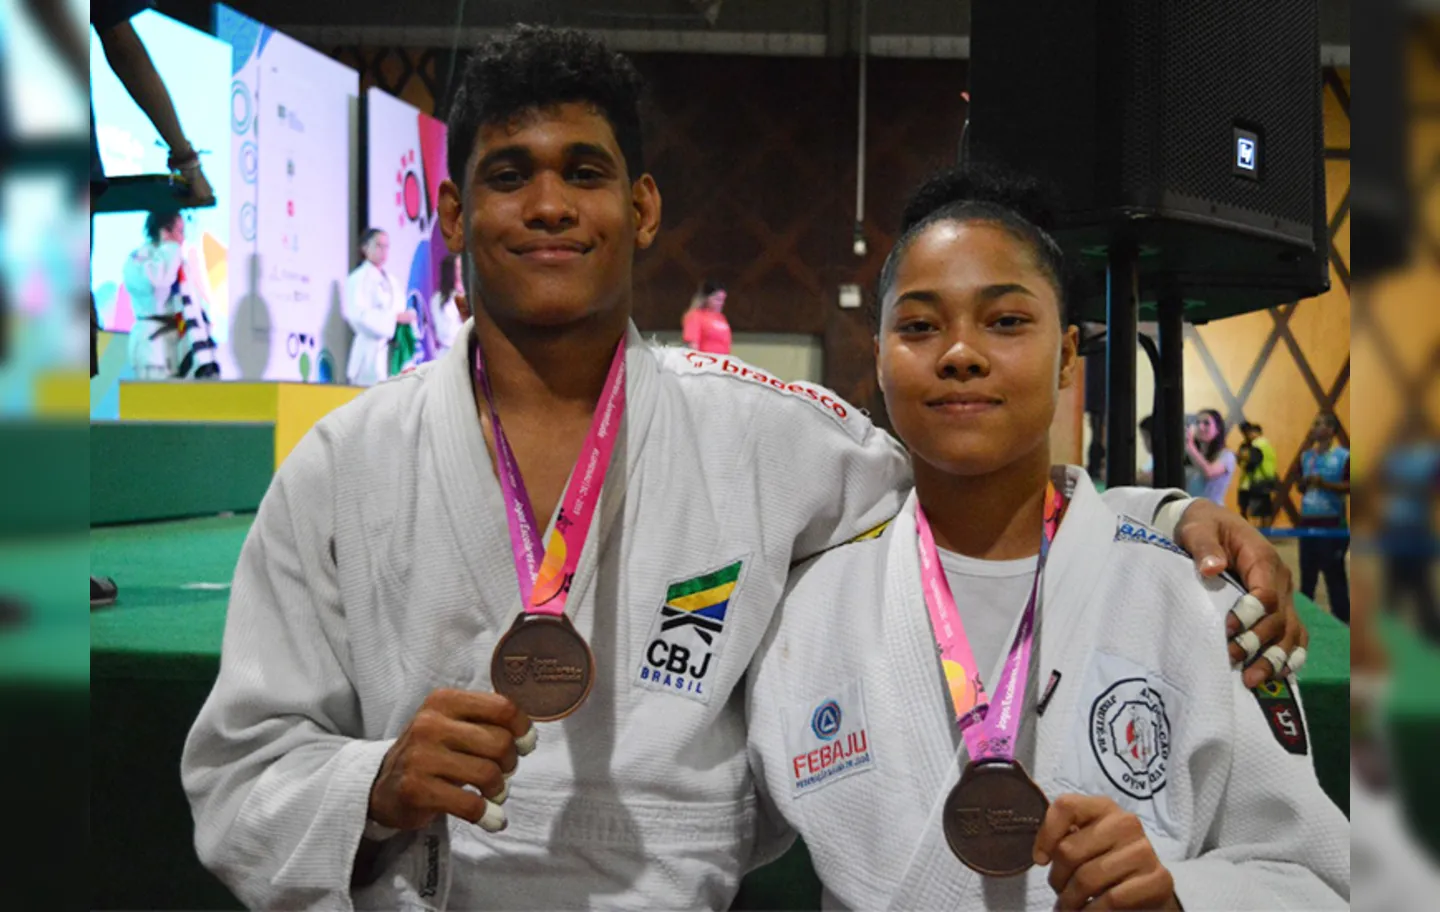 André Carvalho e Sabrina Souza, ambos de Jequié, faturaram o bronze no judô | Foto: Jéssica Tavares | Sudesb